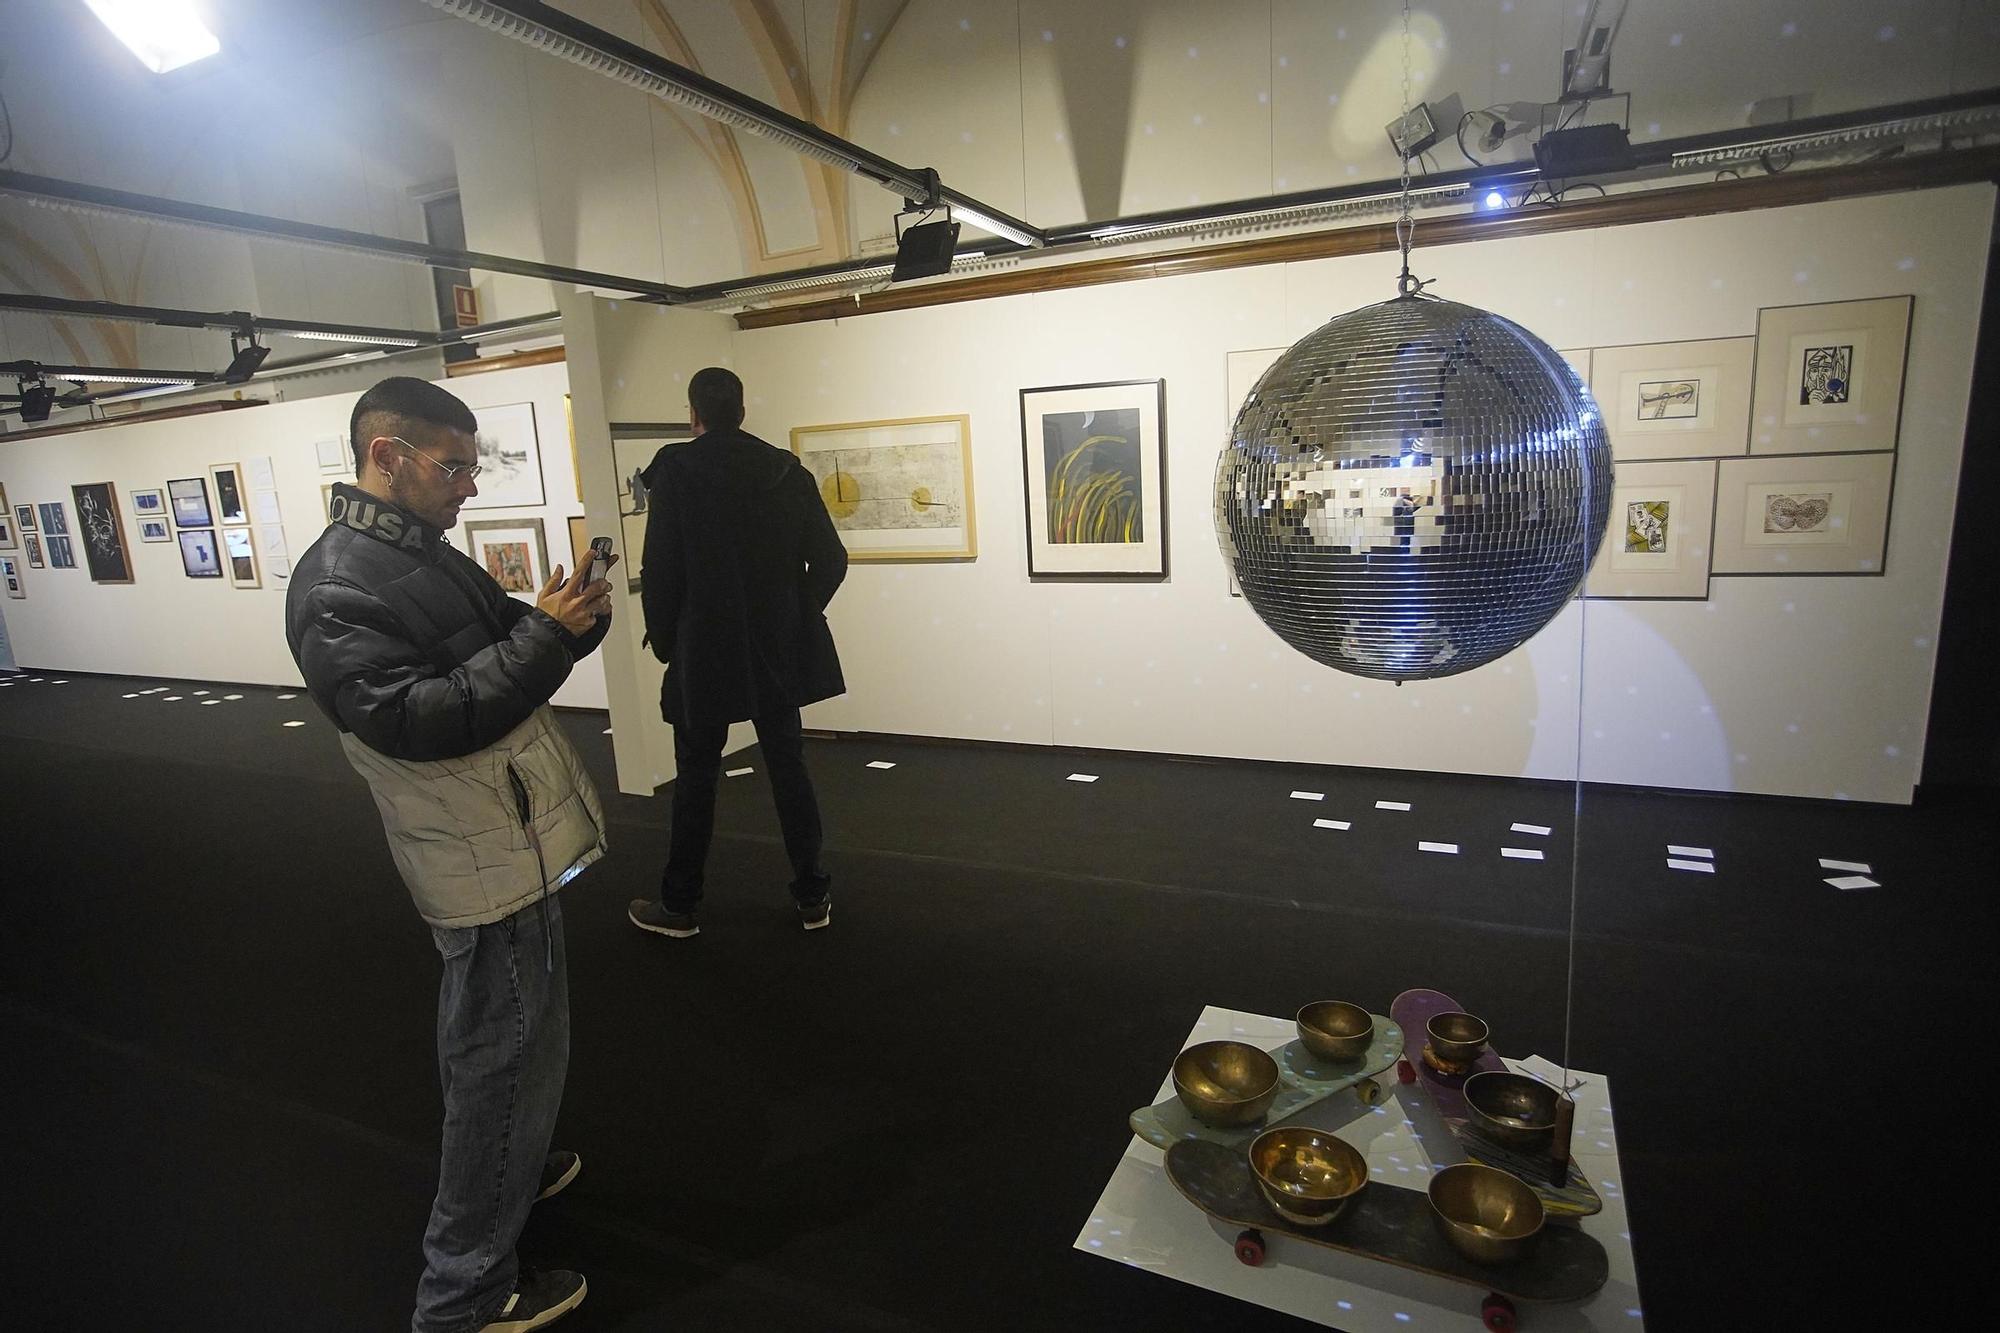 Els 120 artistes dels vint anys de la Fundació Valvi, reunits en una exposició